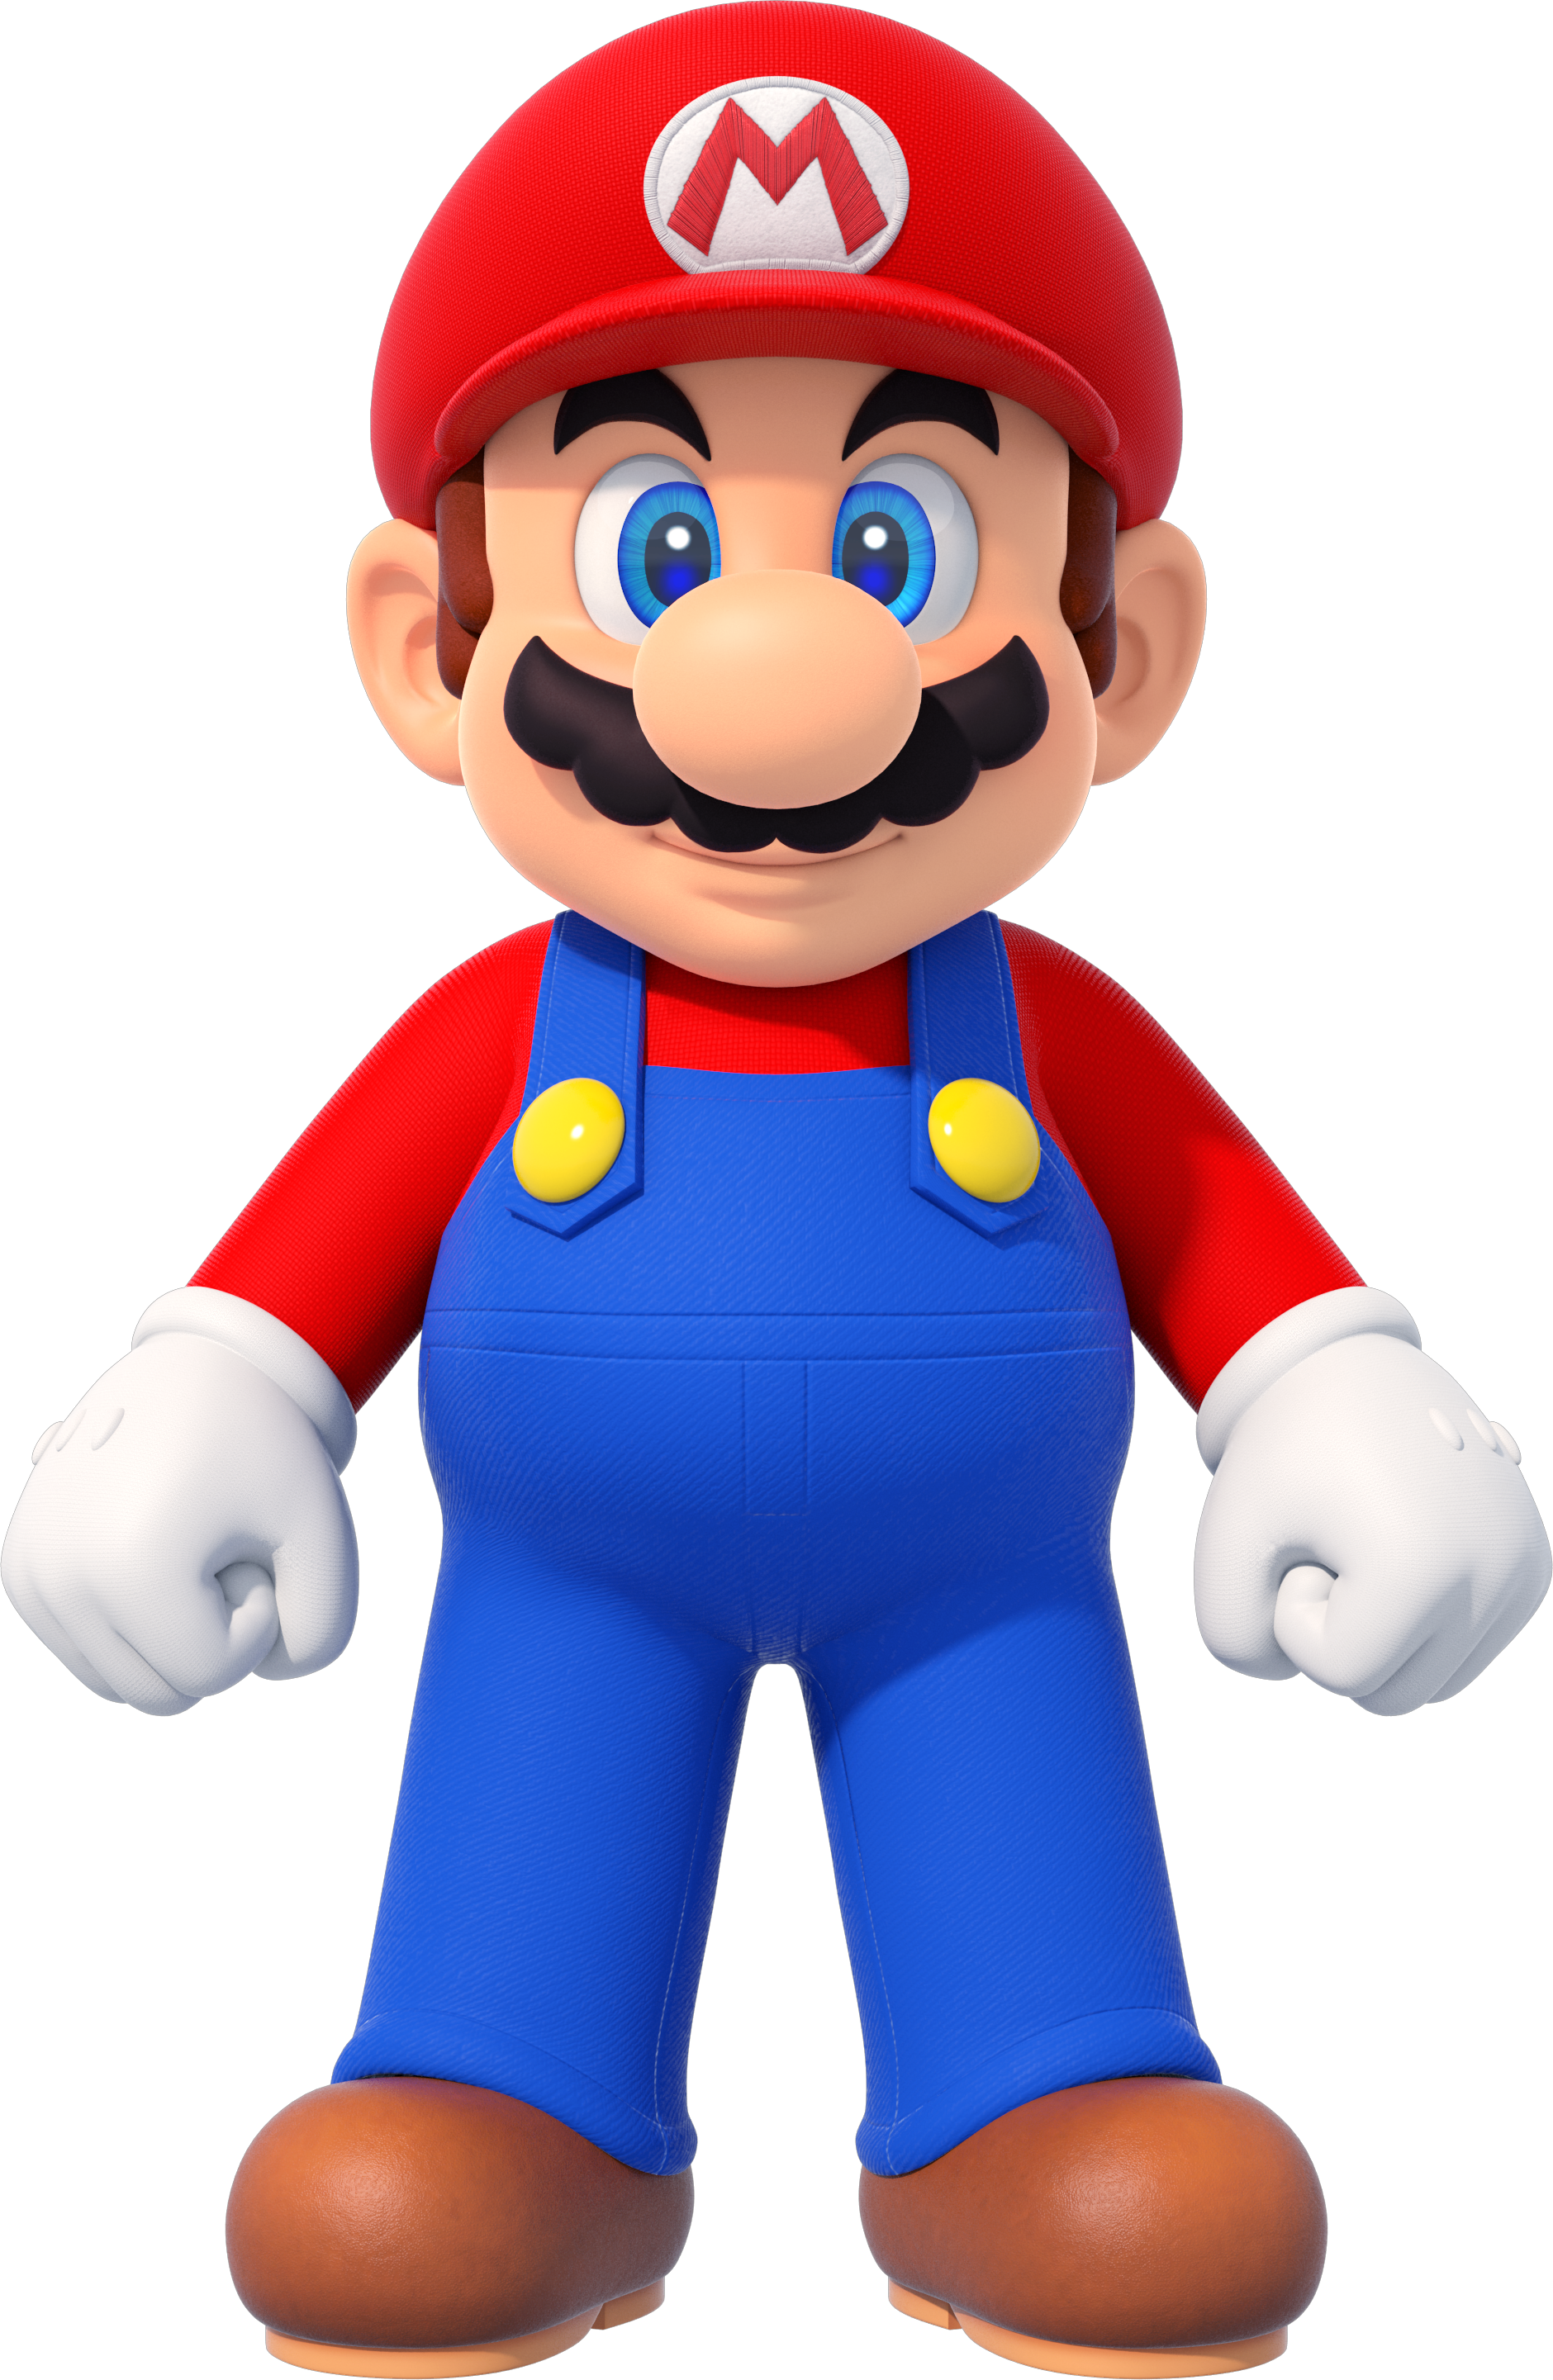 Mario_New_Super_Mario_Bros_U_Deluxe.png